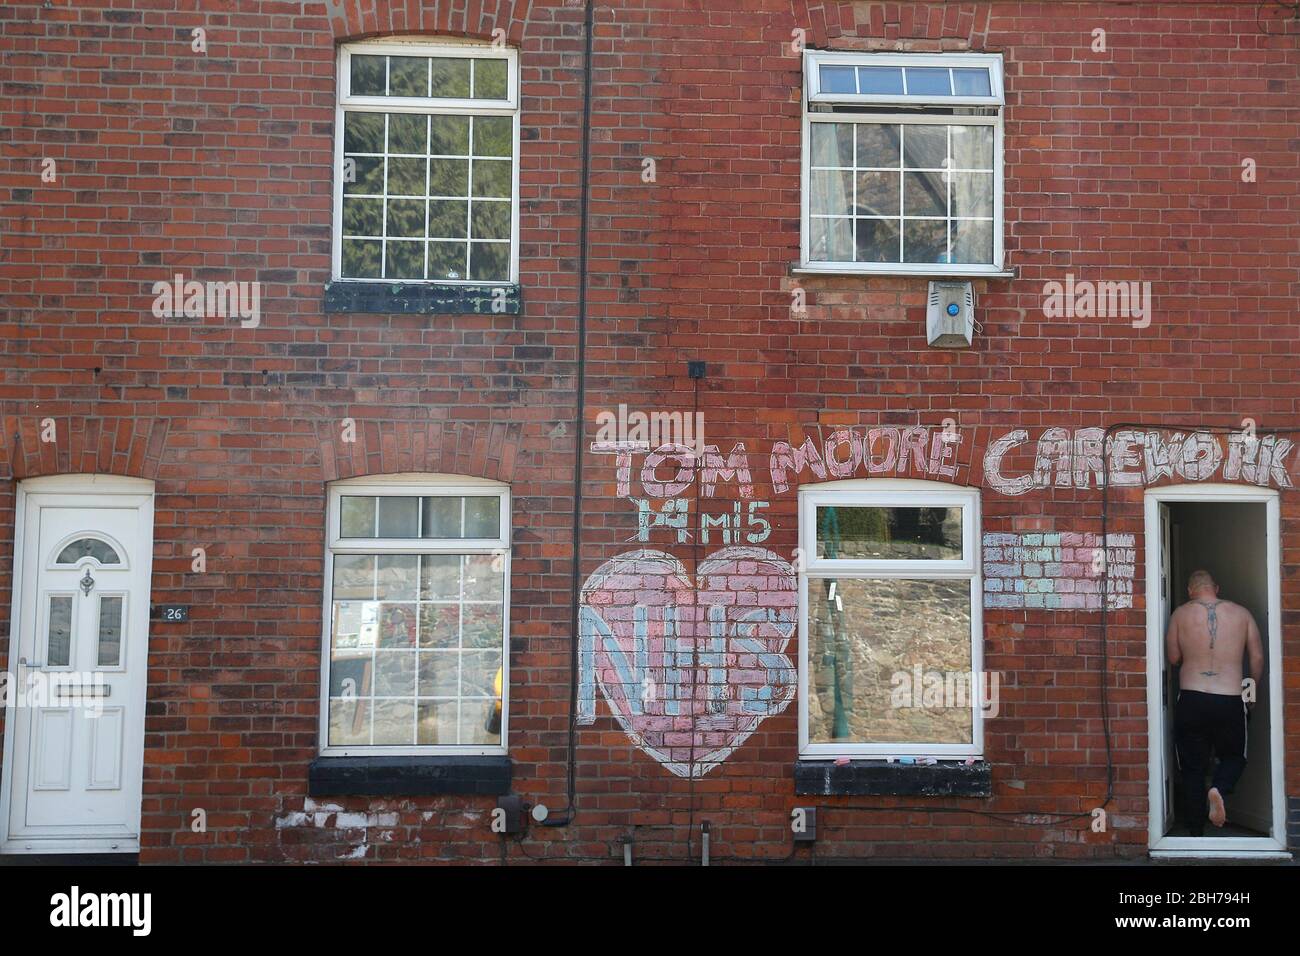 Anstey, Leicestershire, Royaume-Uni. 24 avril 2020. Un homme entre dans une maison avec un hommage au NHS et au capitaine Tom Moore pendant le verrouillage de la pandémie de coronavirus. Credit Darren Staples/Alay Live News. Banque D'Images